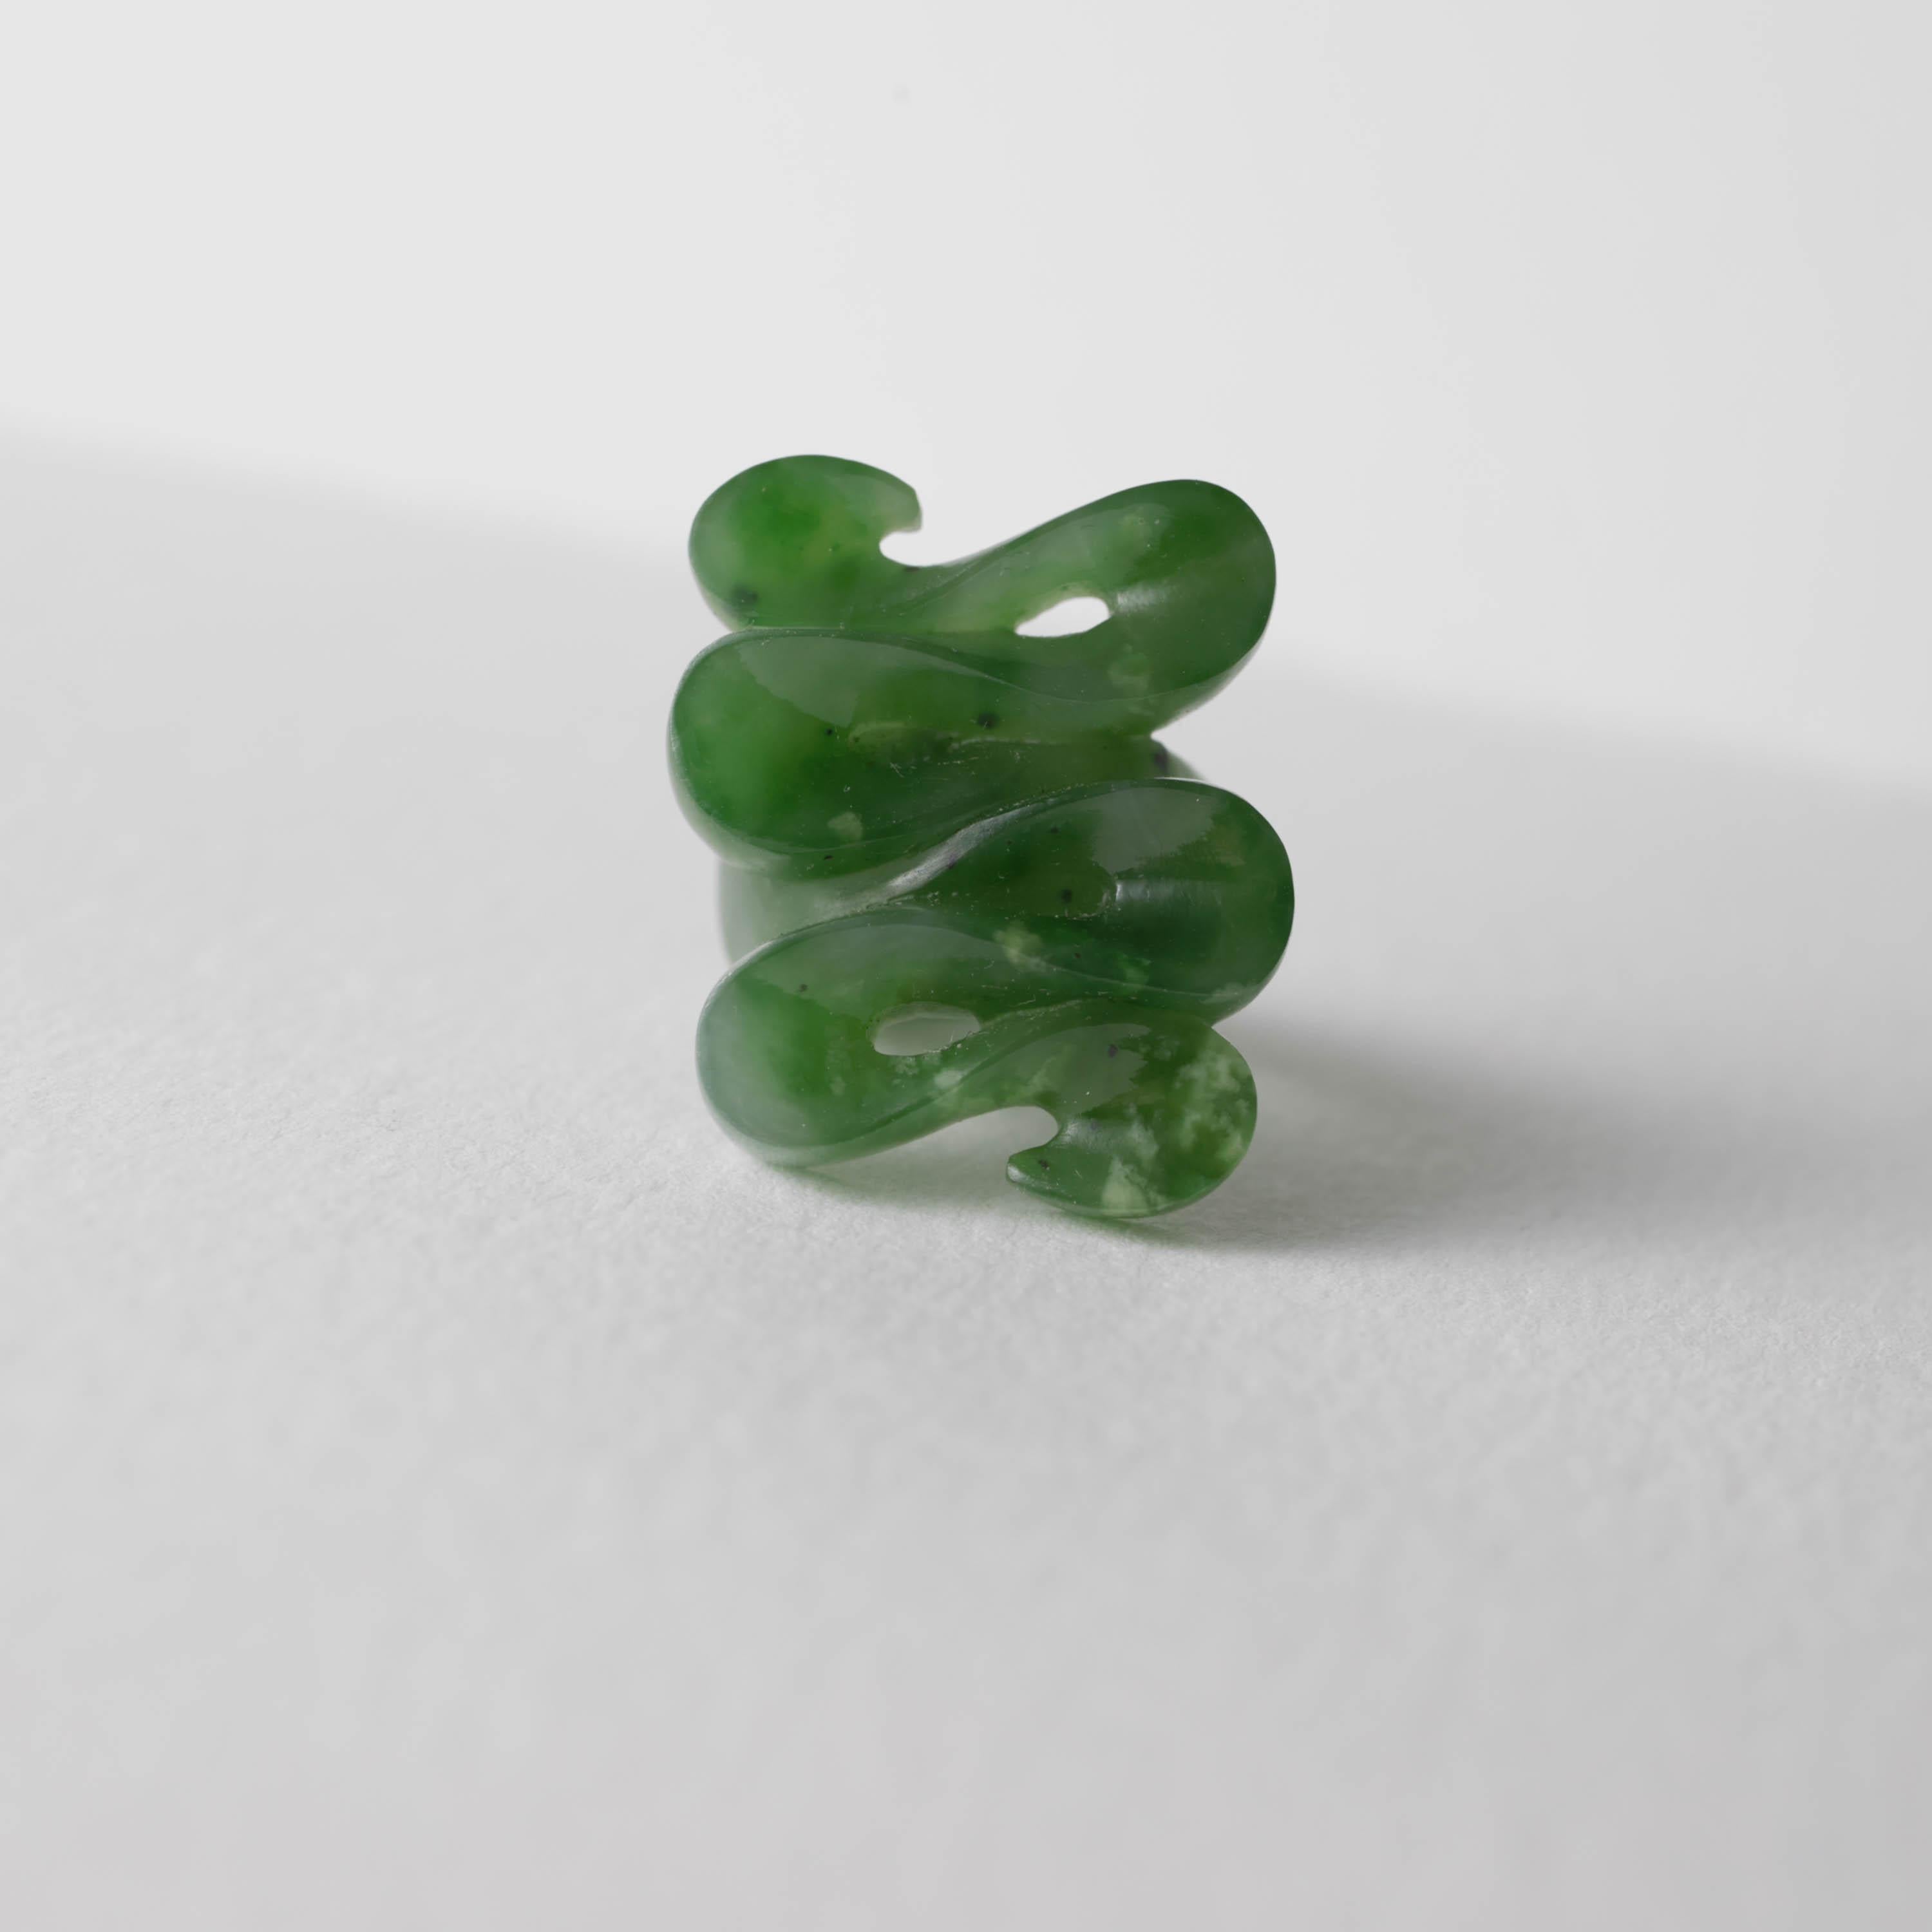 Sculptée dans une seule pièce de jade néphrite translucide, cette pièce présente une forme d'onde impeccablement rendue avec un poli brillant. Au verso, vous trouverez une tige sculptée avec une finition mate très douce. La juxtaposition du vernis